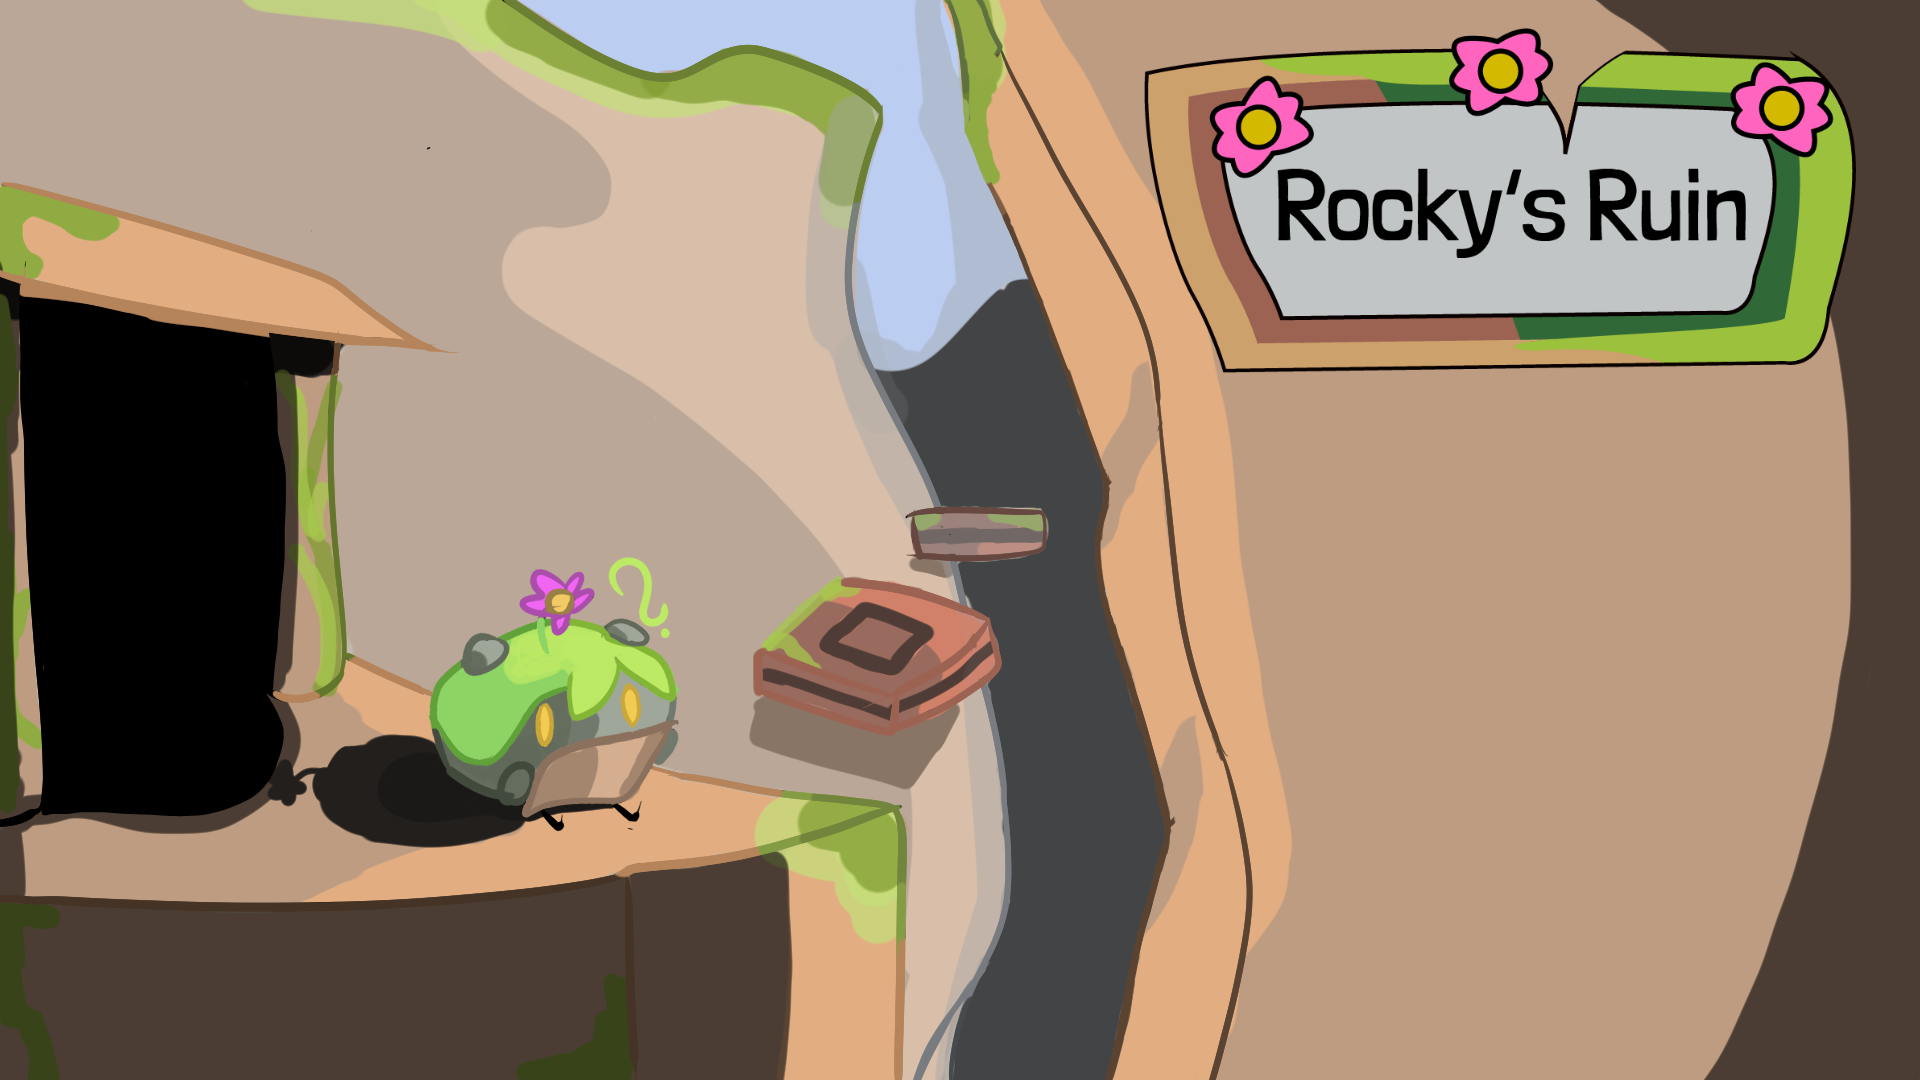 Rocky's Ruin